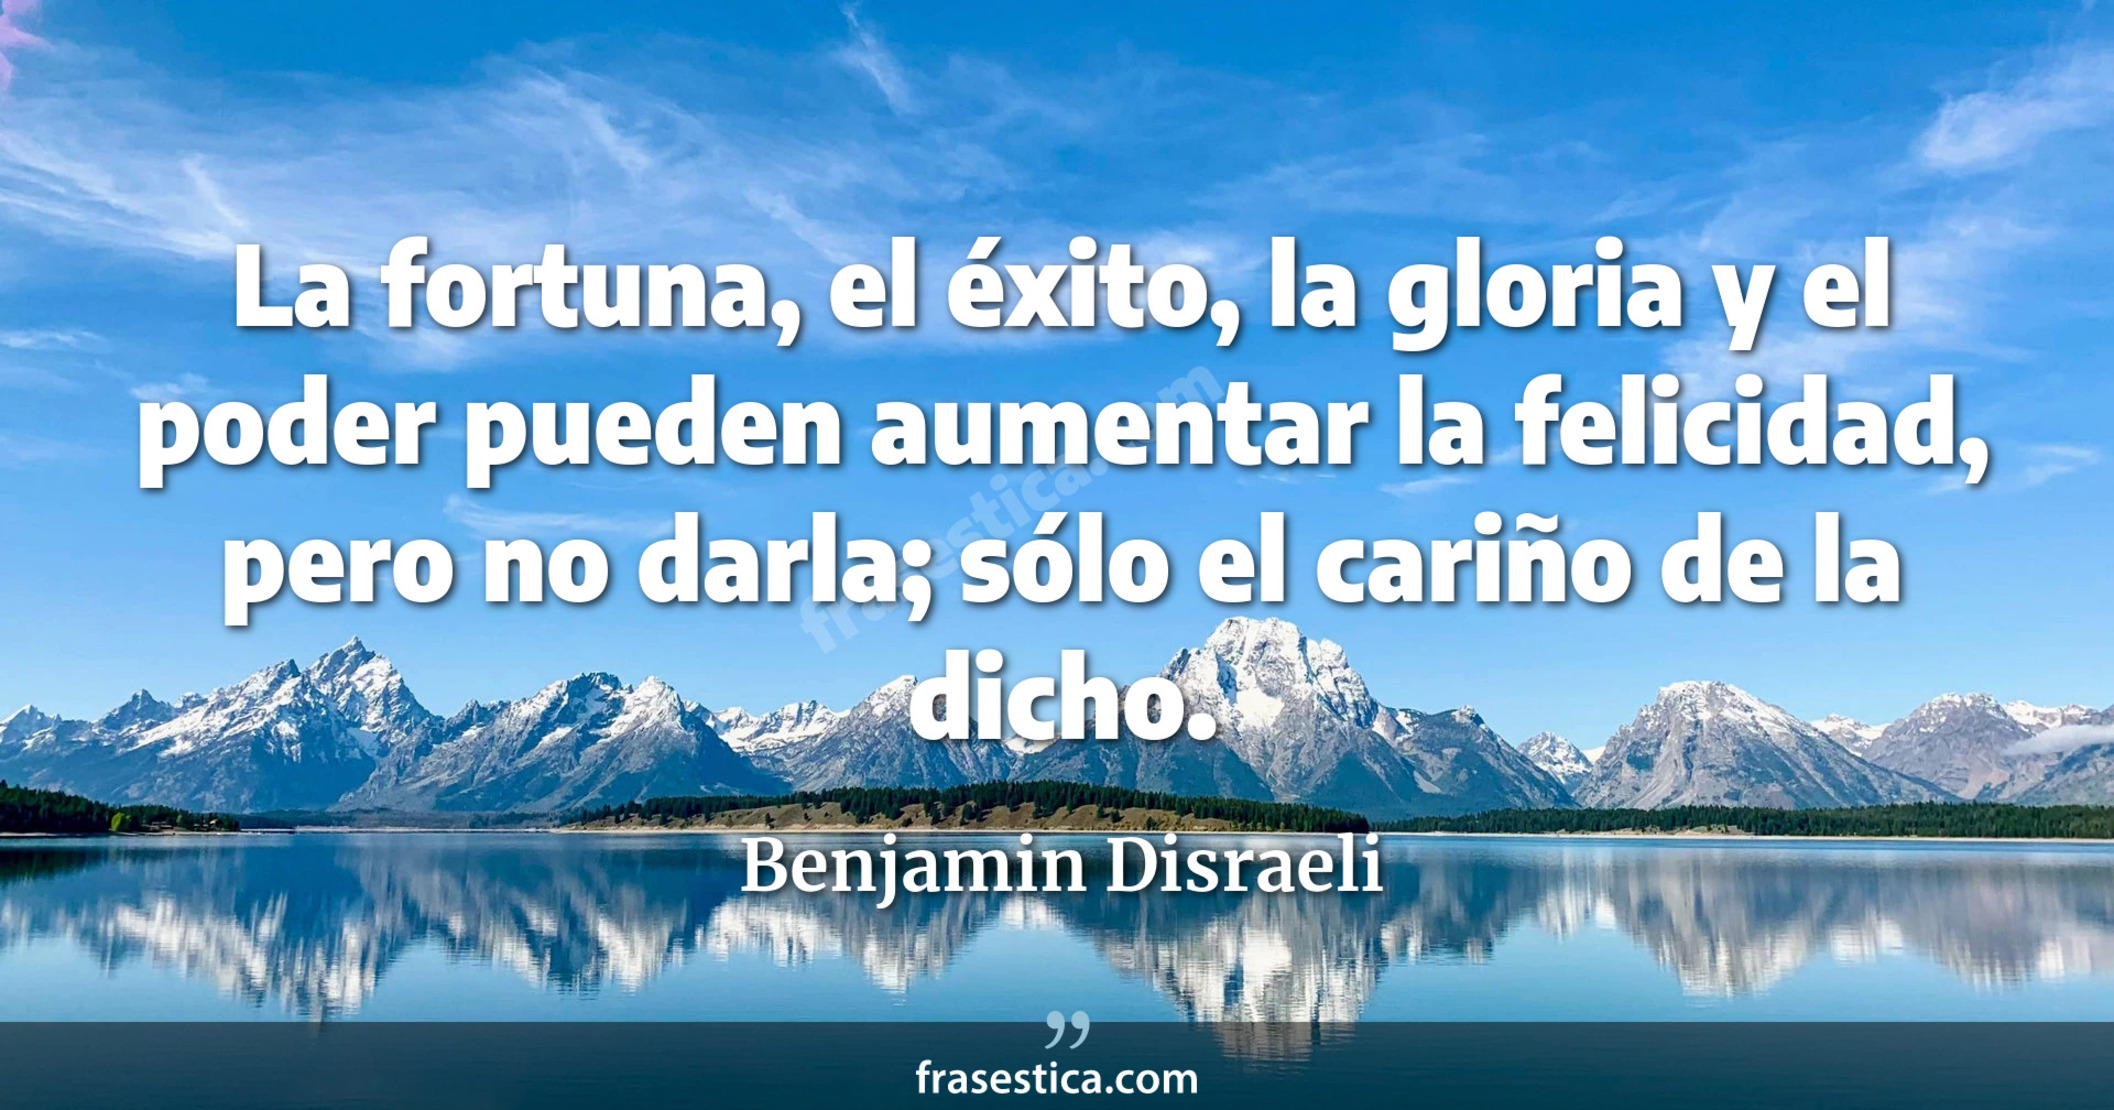 La fortuna, el éxito, la gloria y el poder pueden aumentar la felicidad, pero no darla; sólo el cariño de la dicho. - Benjamin Disraeli